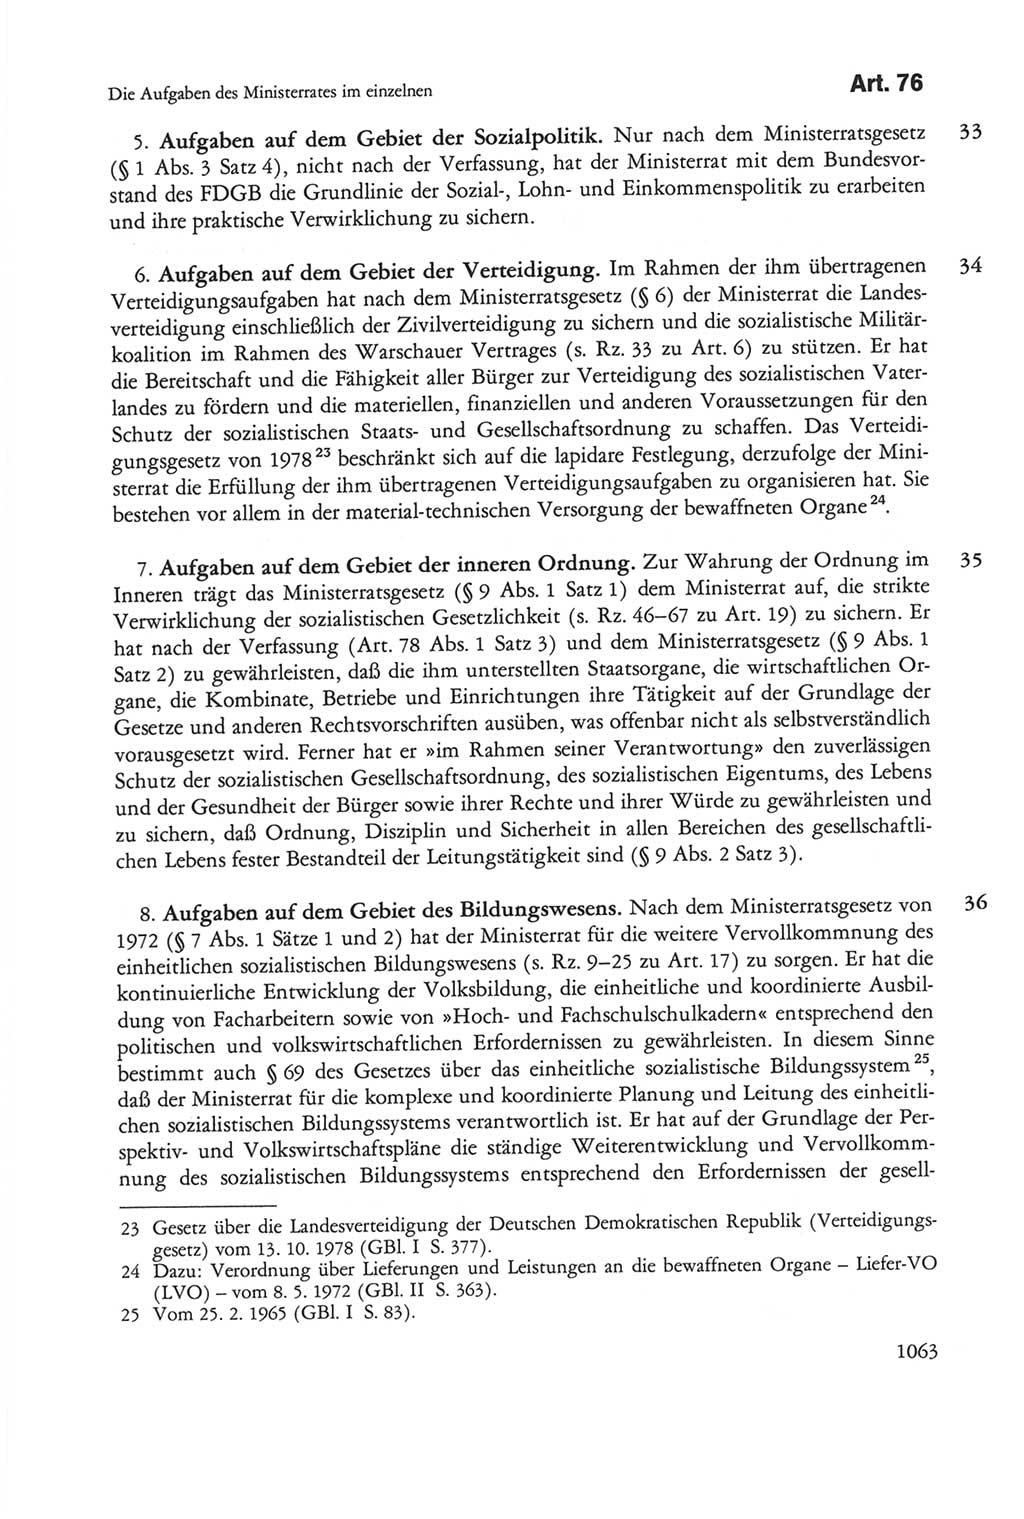 Die sozialistische Verfassung der Deutschen Demokratischen Republik (DDR), Kommentar 1982, Seite 1063 (Soz. Verf. DDR Komm. 1982, S. 1063)